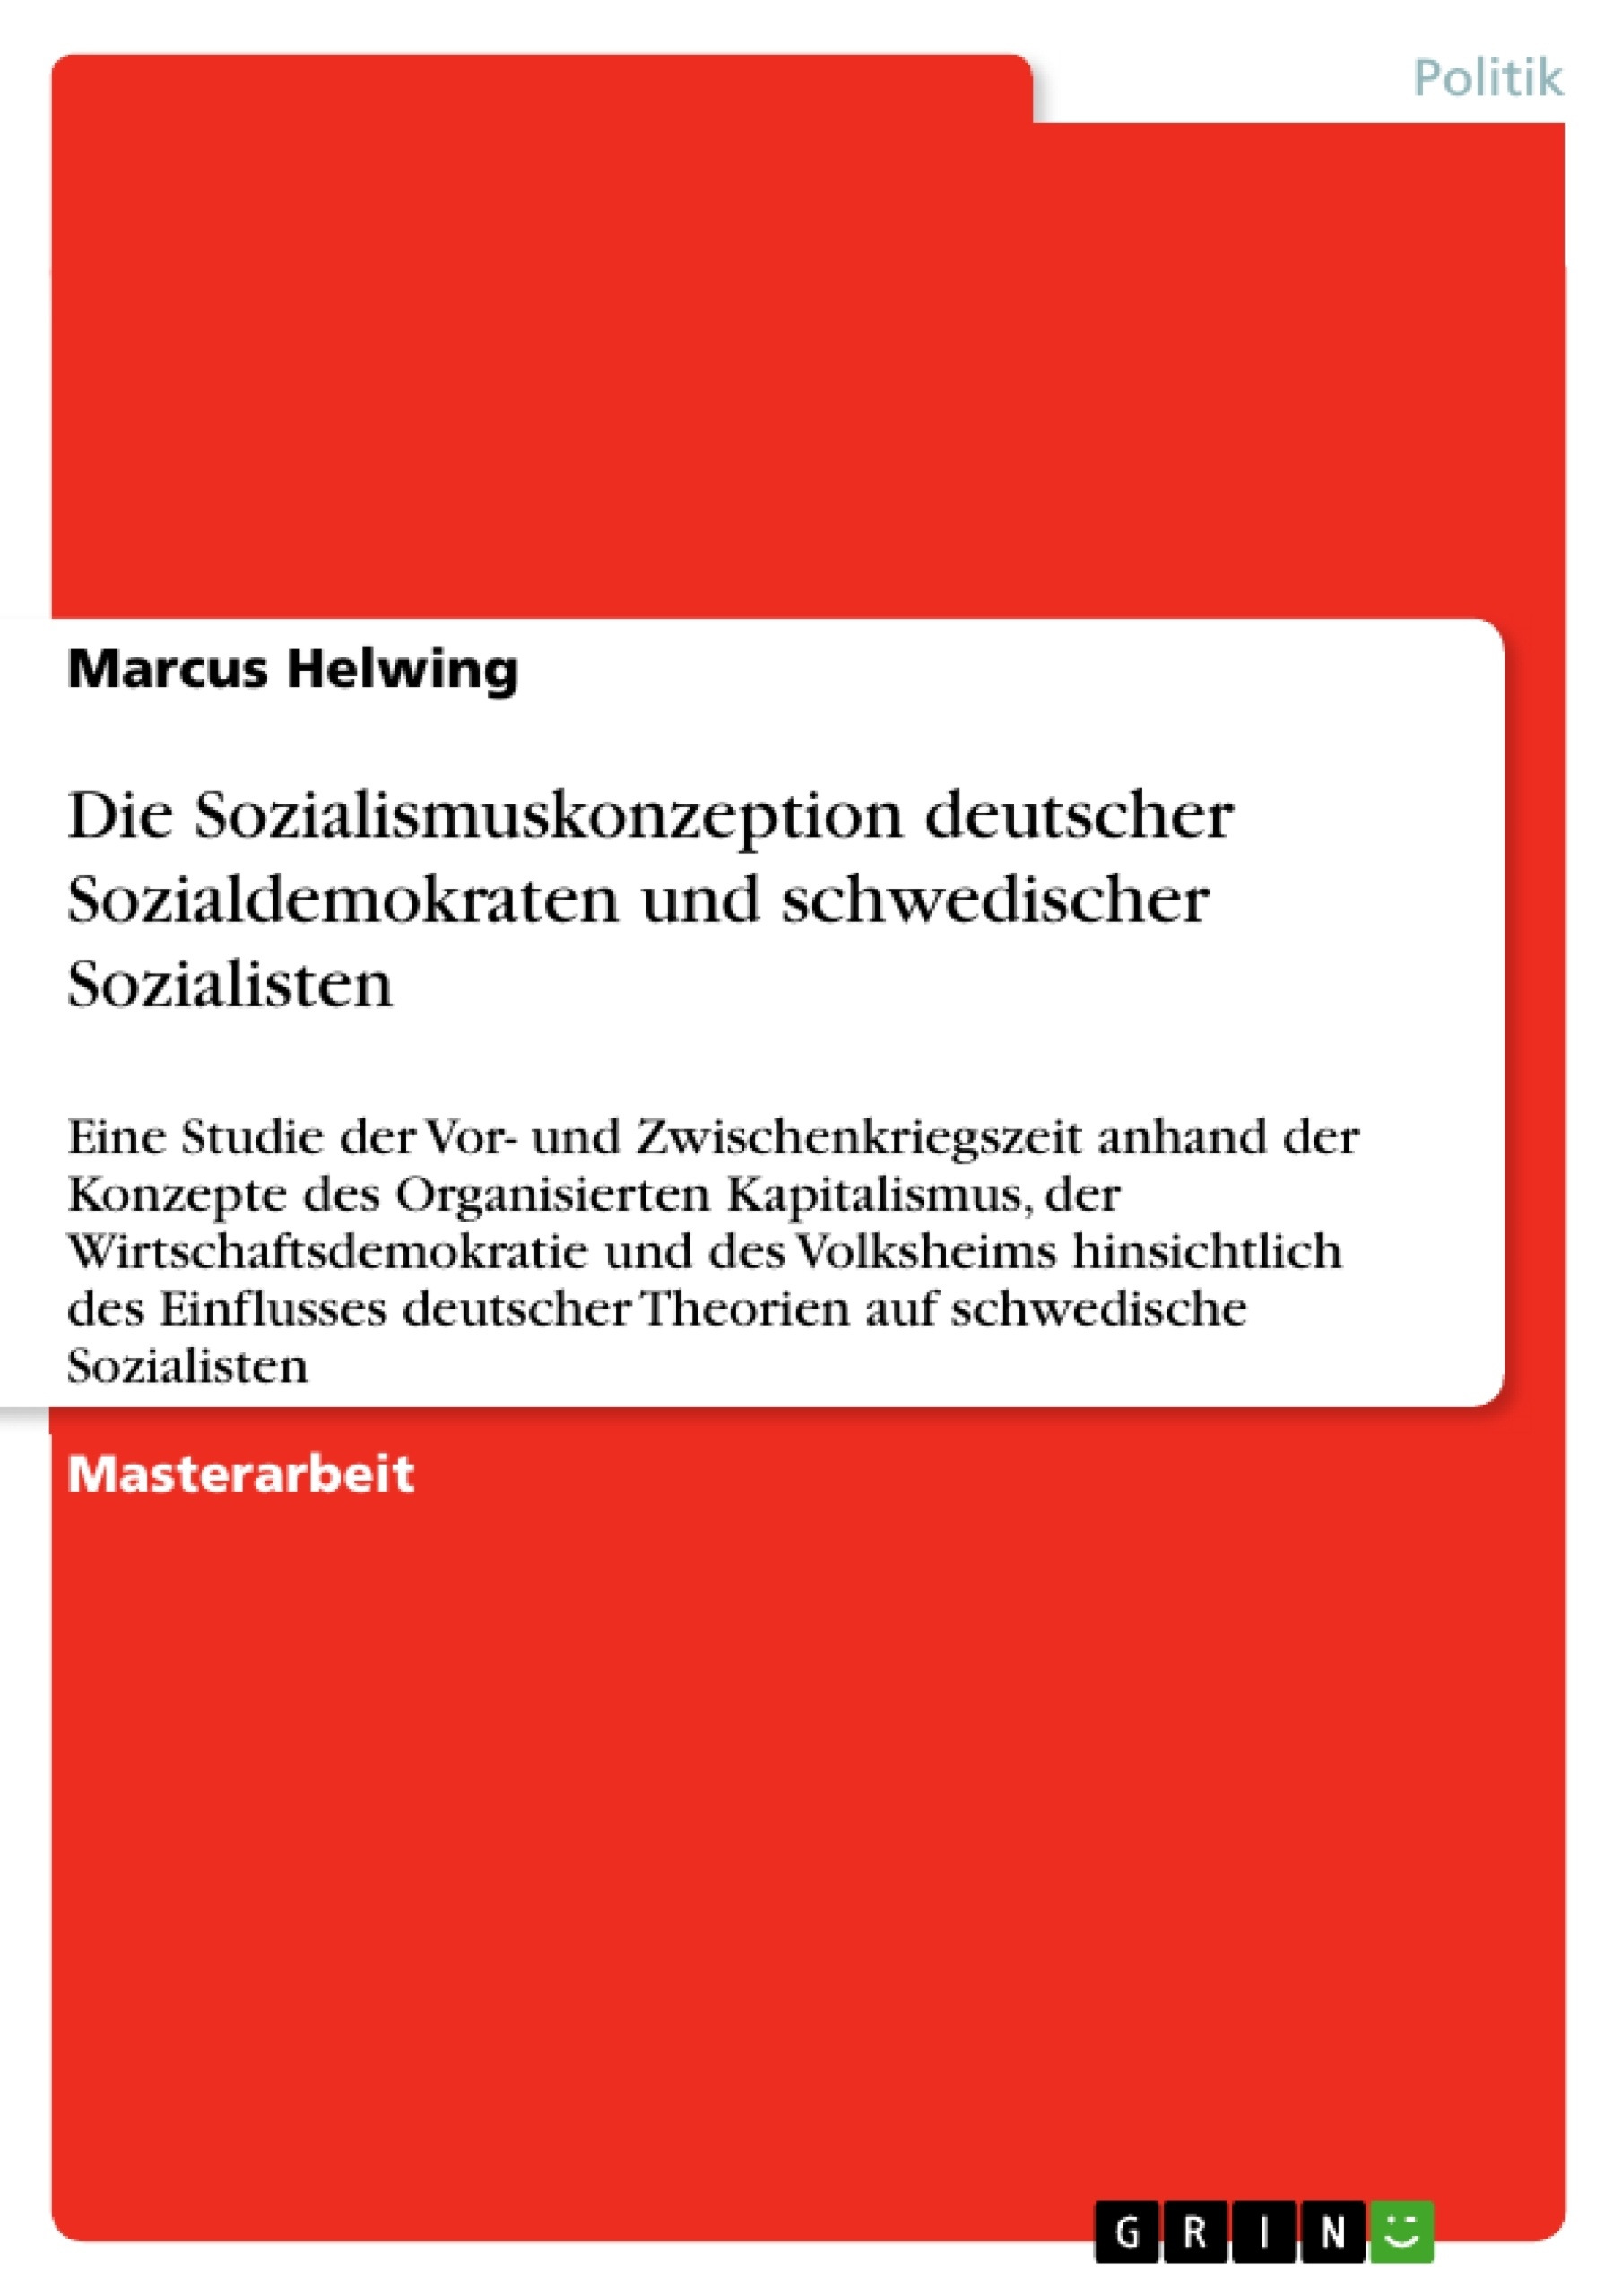 Titel: Die Sozialismuskonzeption deutscher Sozialdemokraten und schwedischer Sozialisten